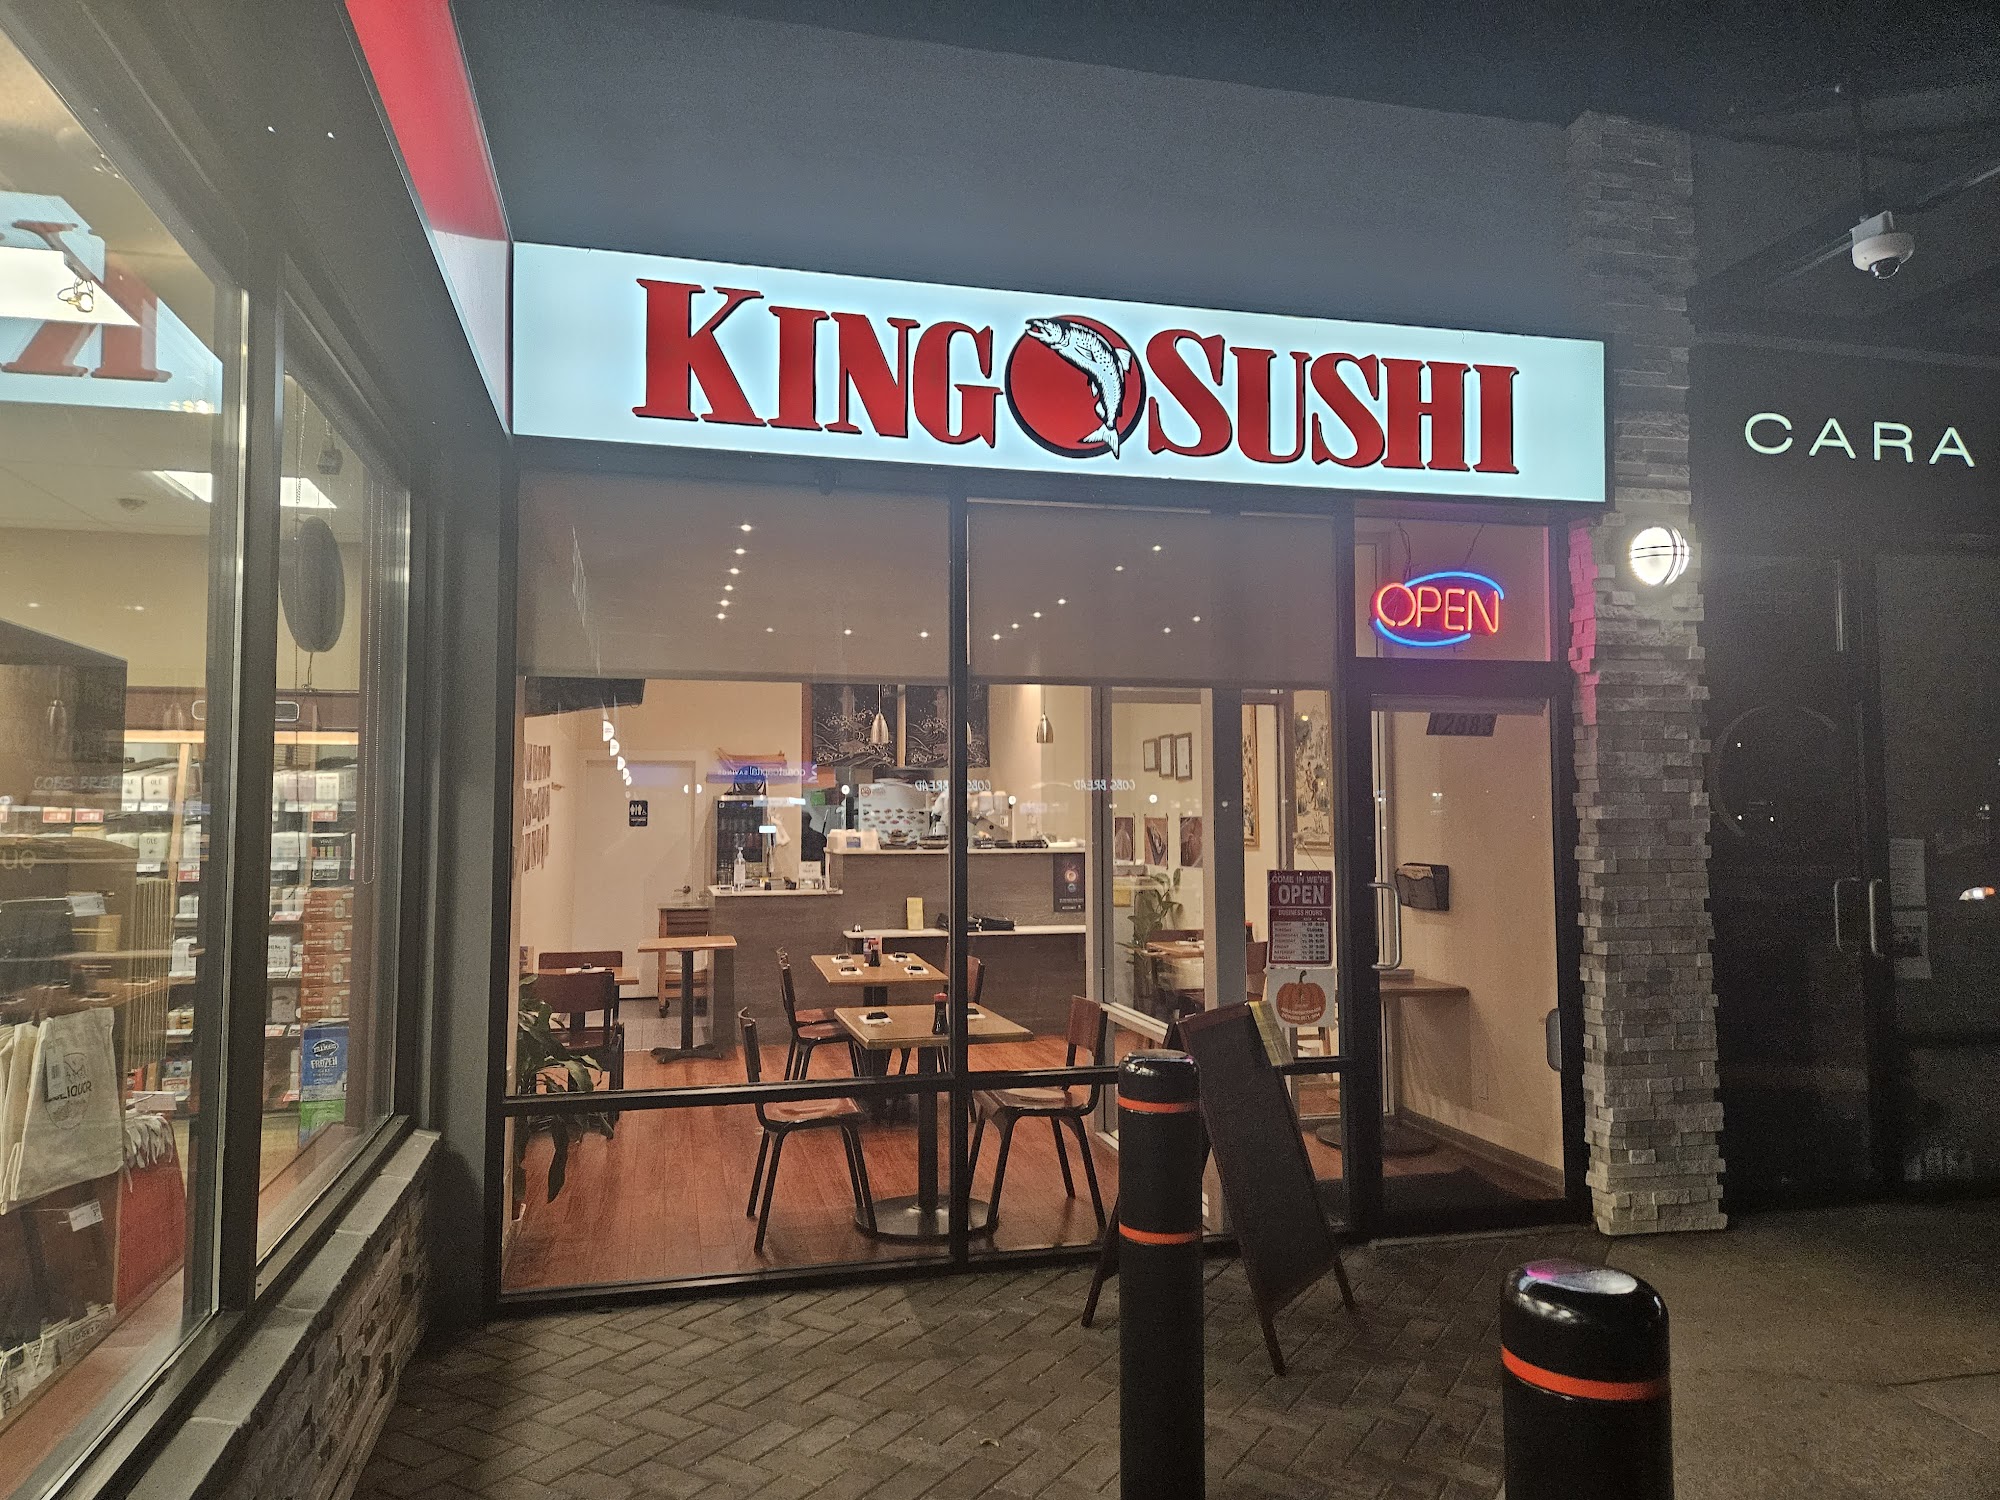 King Sushi